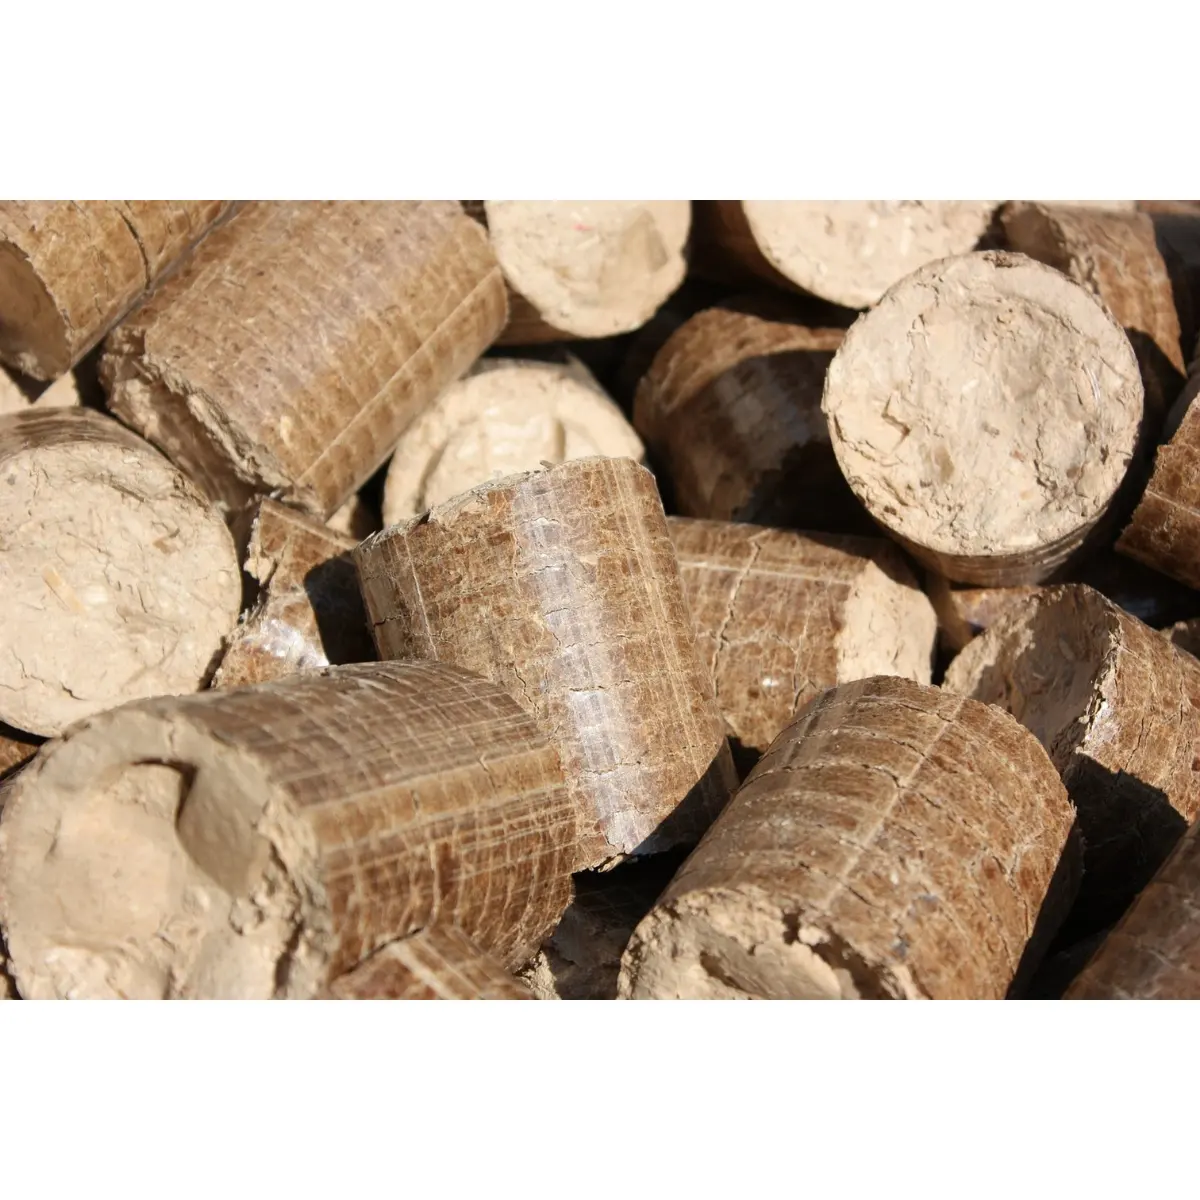 Оптовая продажа, высококачественный продукт в упаковке, древесные гранулы для продажи от российского производителя, древесные гранулы